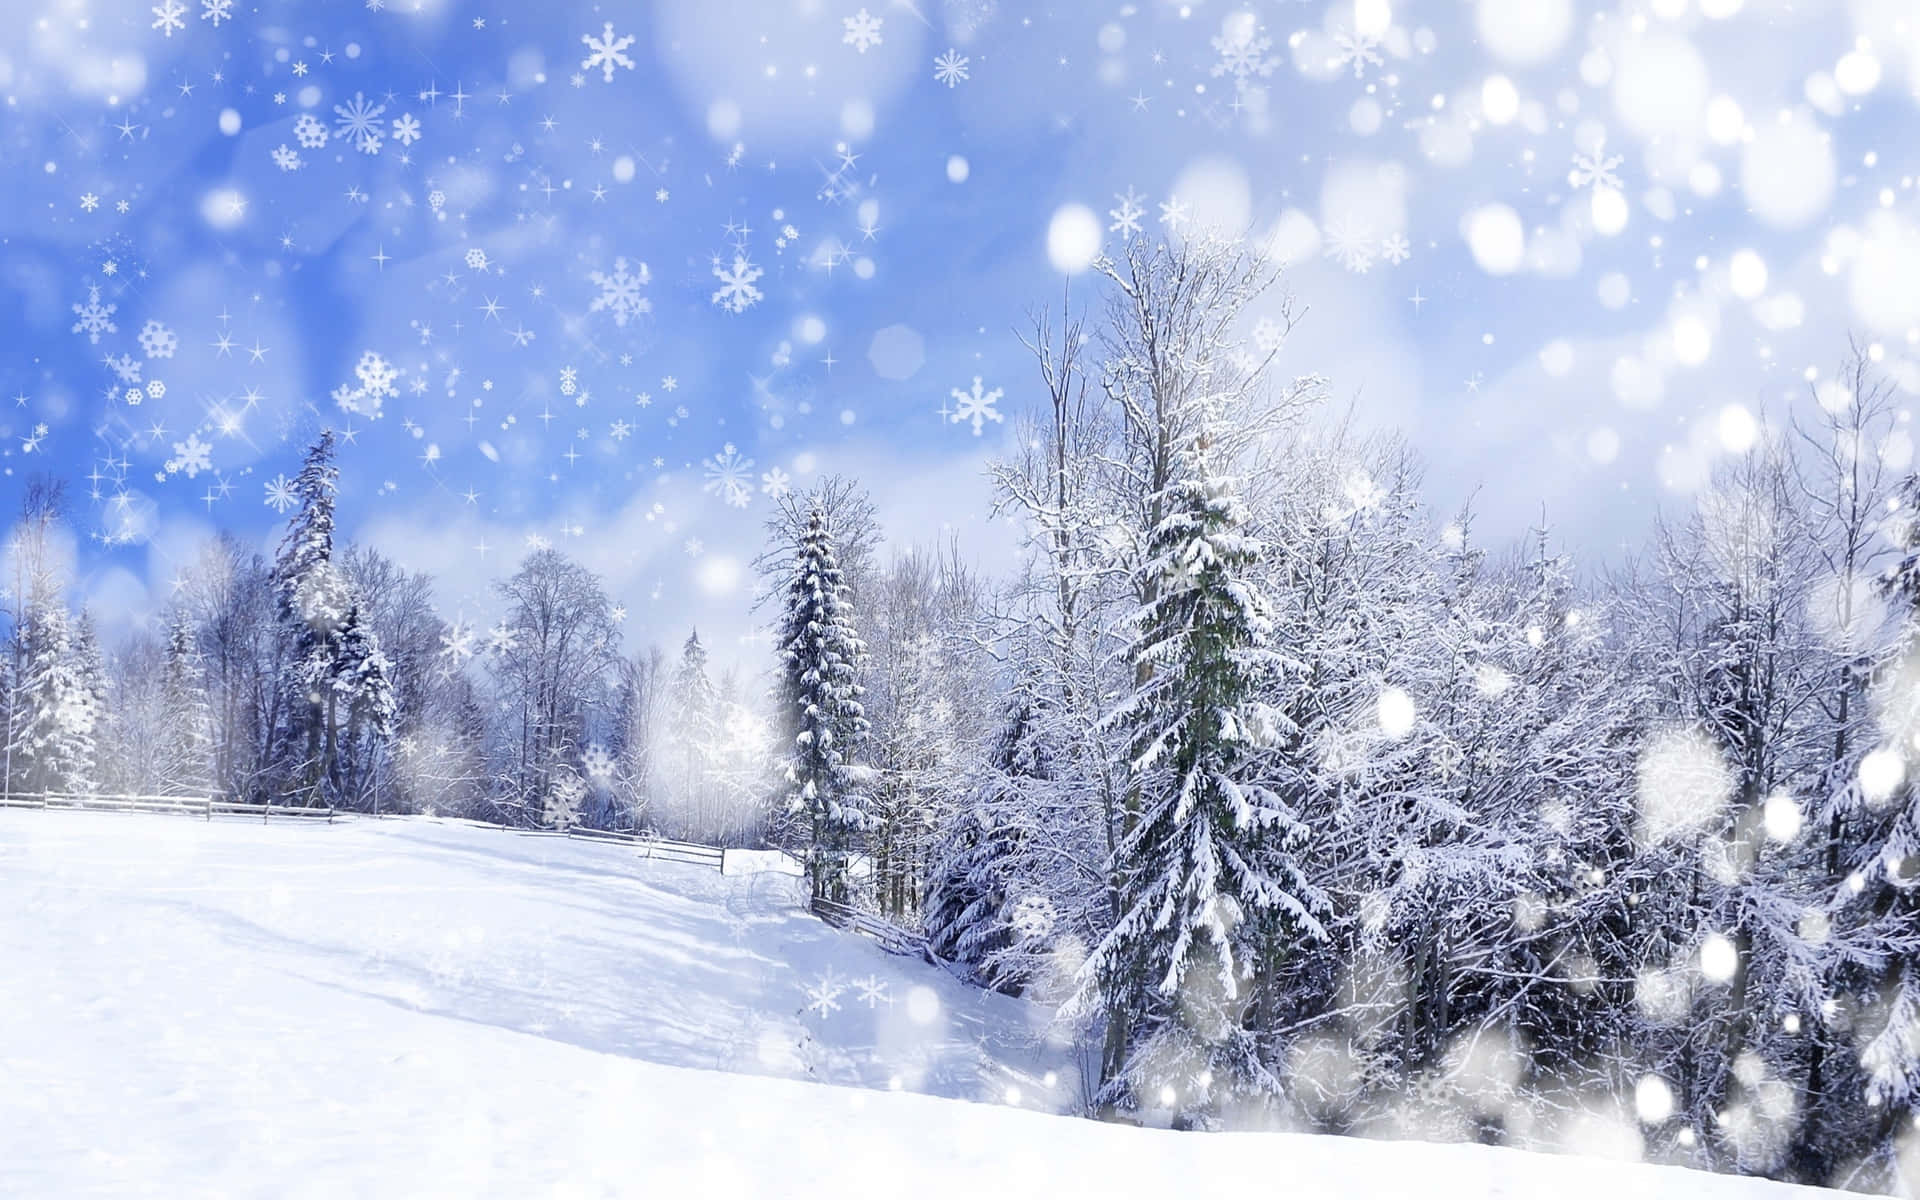 Detperfekte Vinterlandskab! Hyg Dig Og Nyd En Kop Varm Kakao Denne Snehvide Jul!